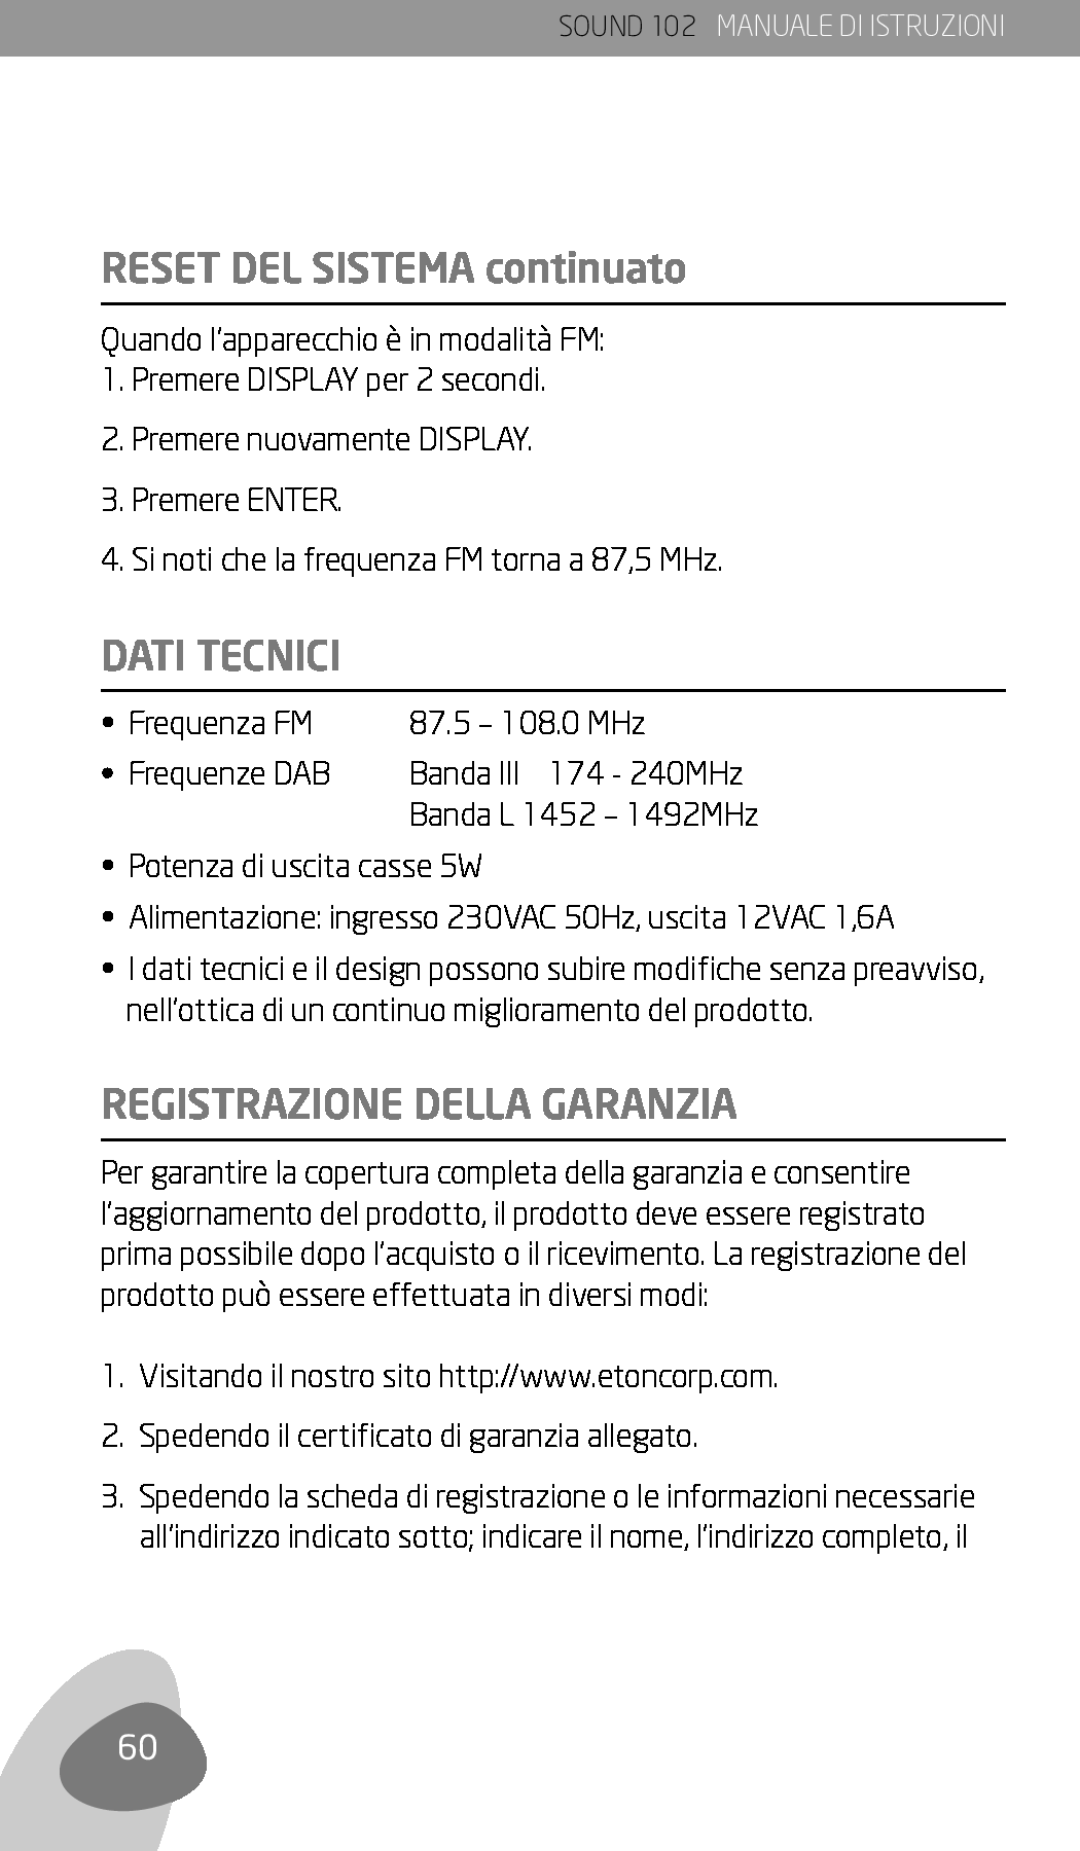 Eton 102 owner manual Reset del sistema continuato, Dati Tecnici, Registrazione Della Garanzia 